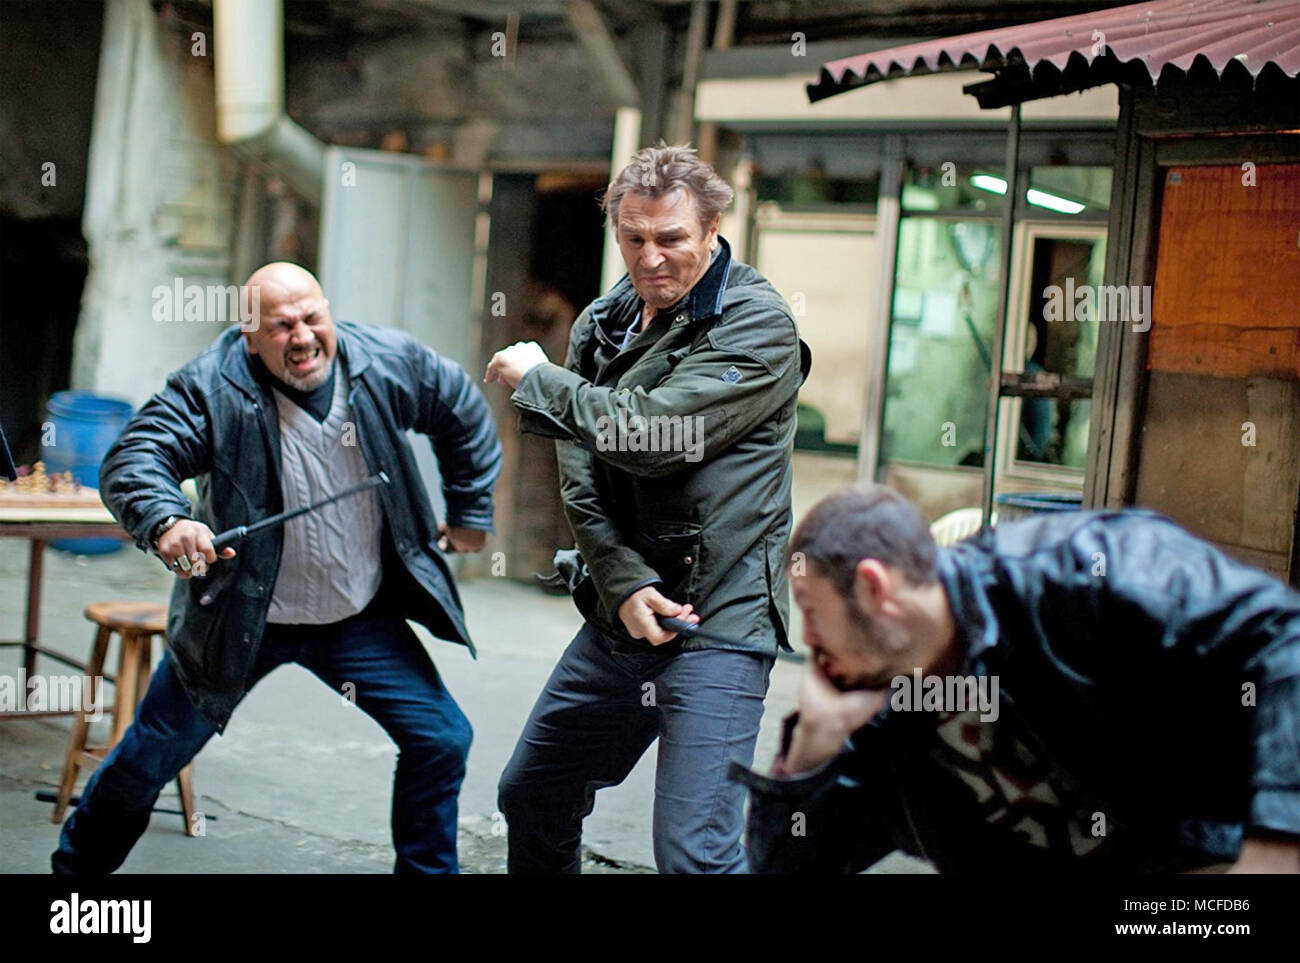 TAKEN 2 - 2012 EuropaCorp film with Liam Neeson Stock Photo